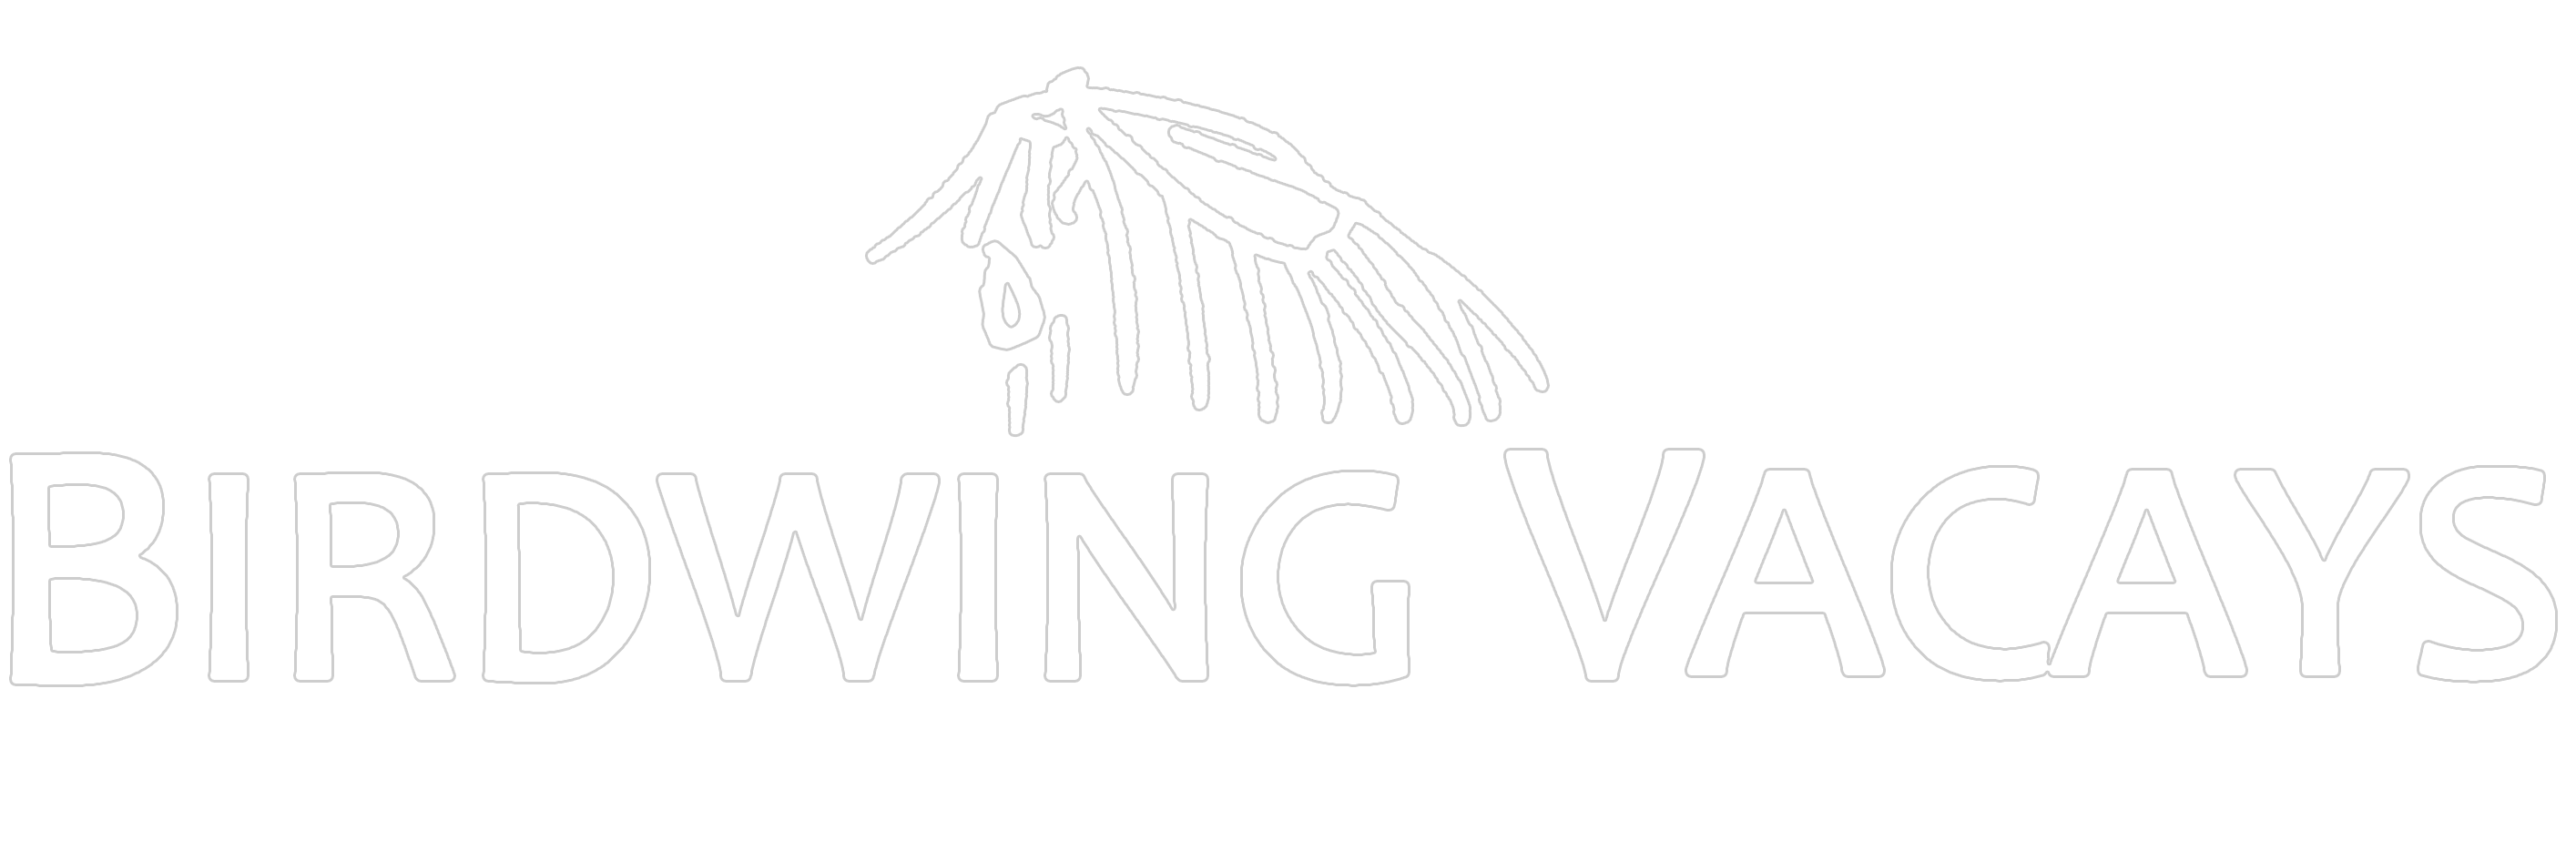 Birdwing Vacays